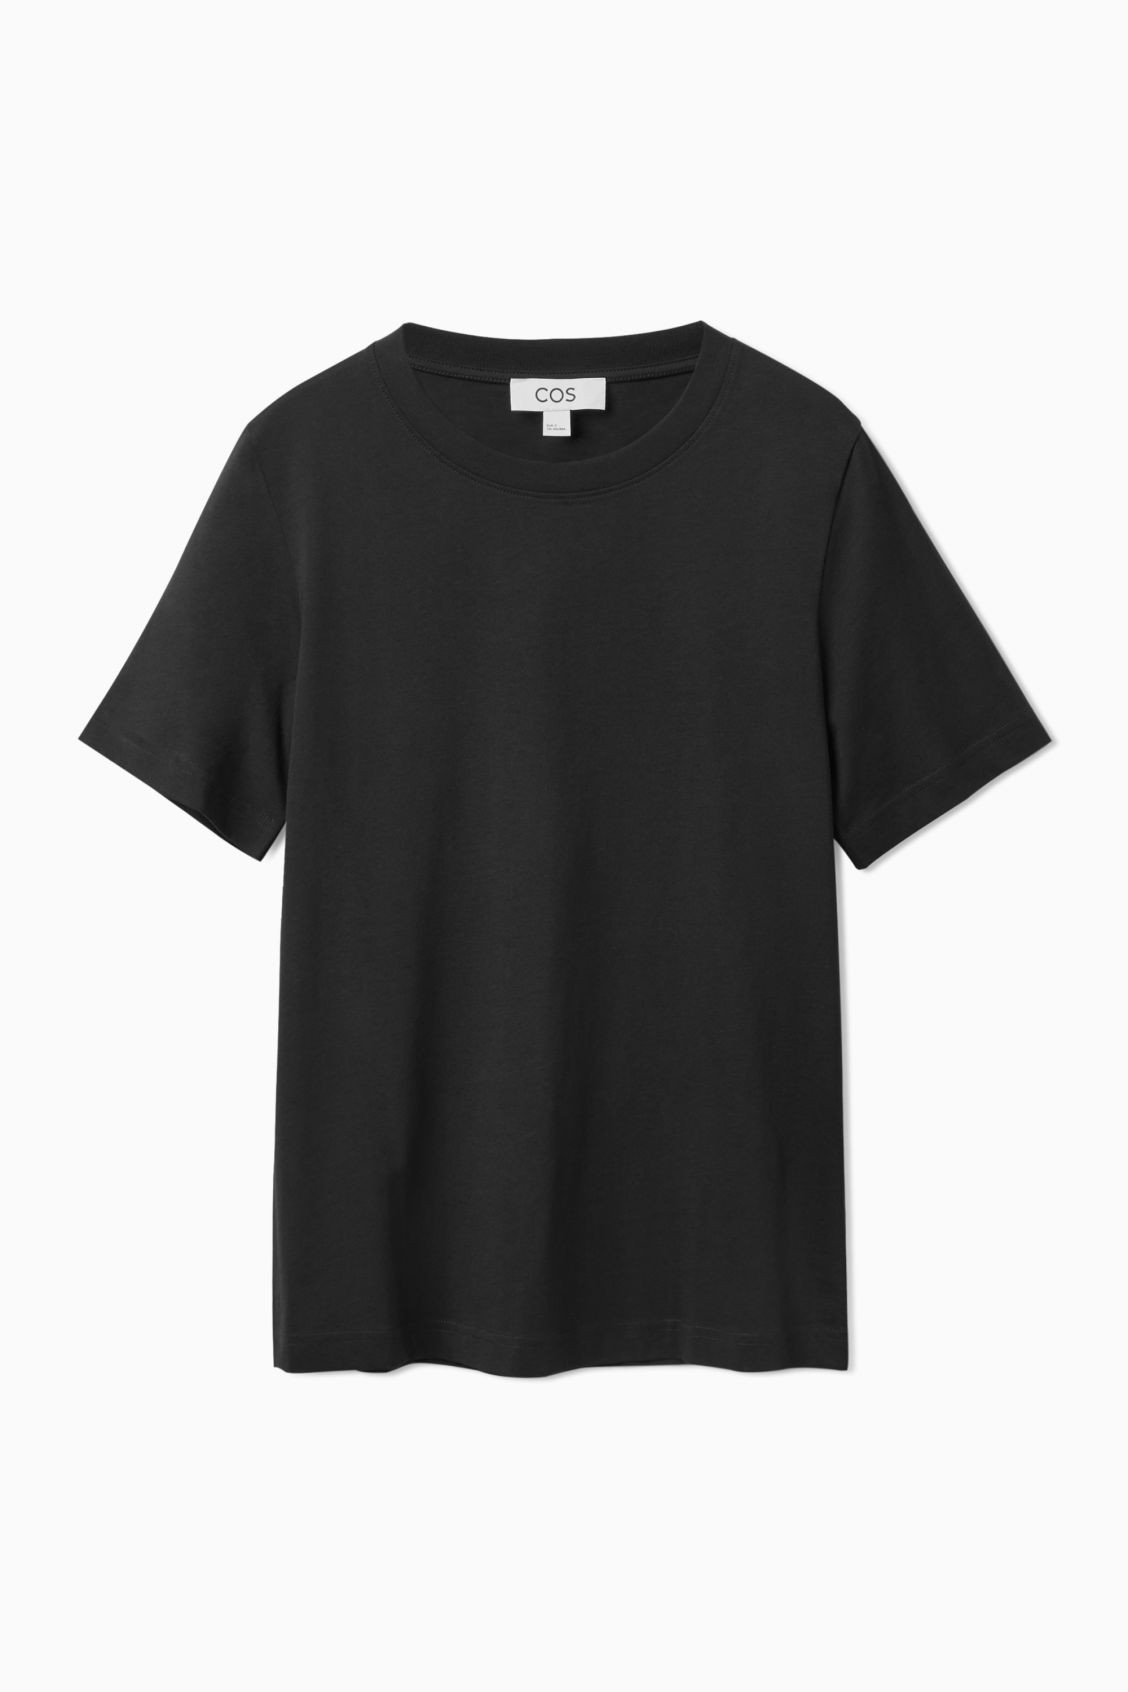 COS Yazlık %100 Pamuk Tshirt - Siyah